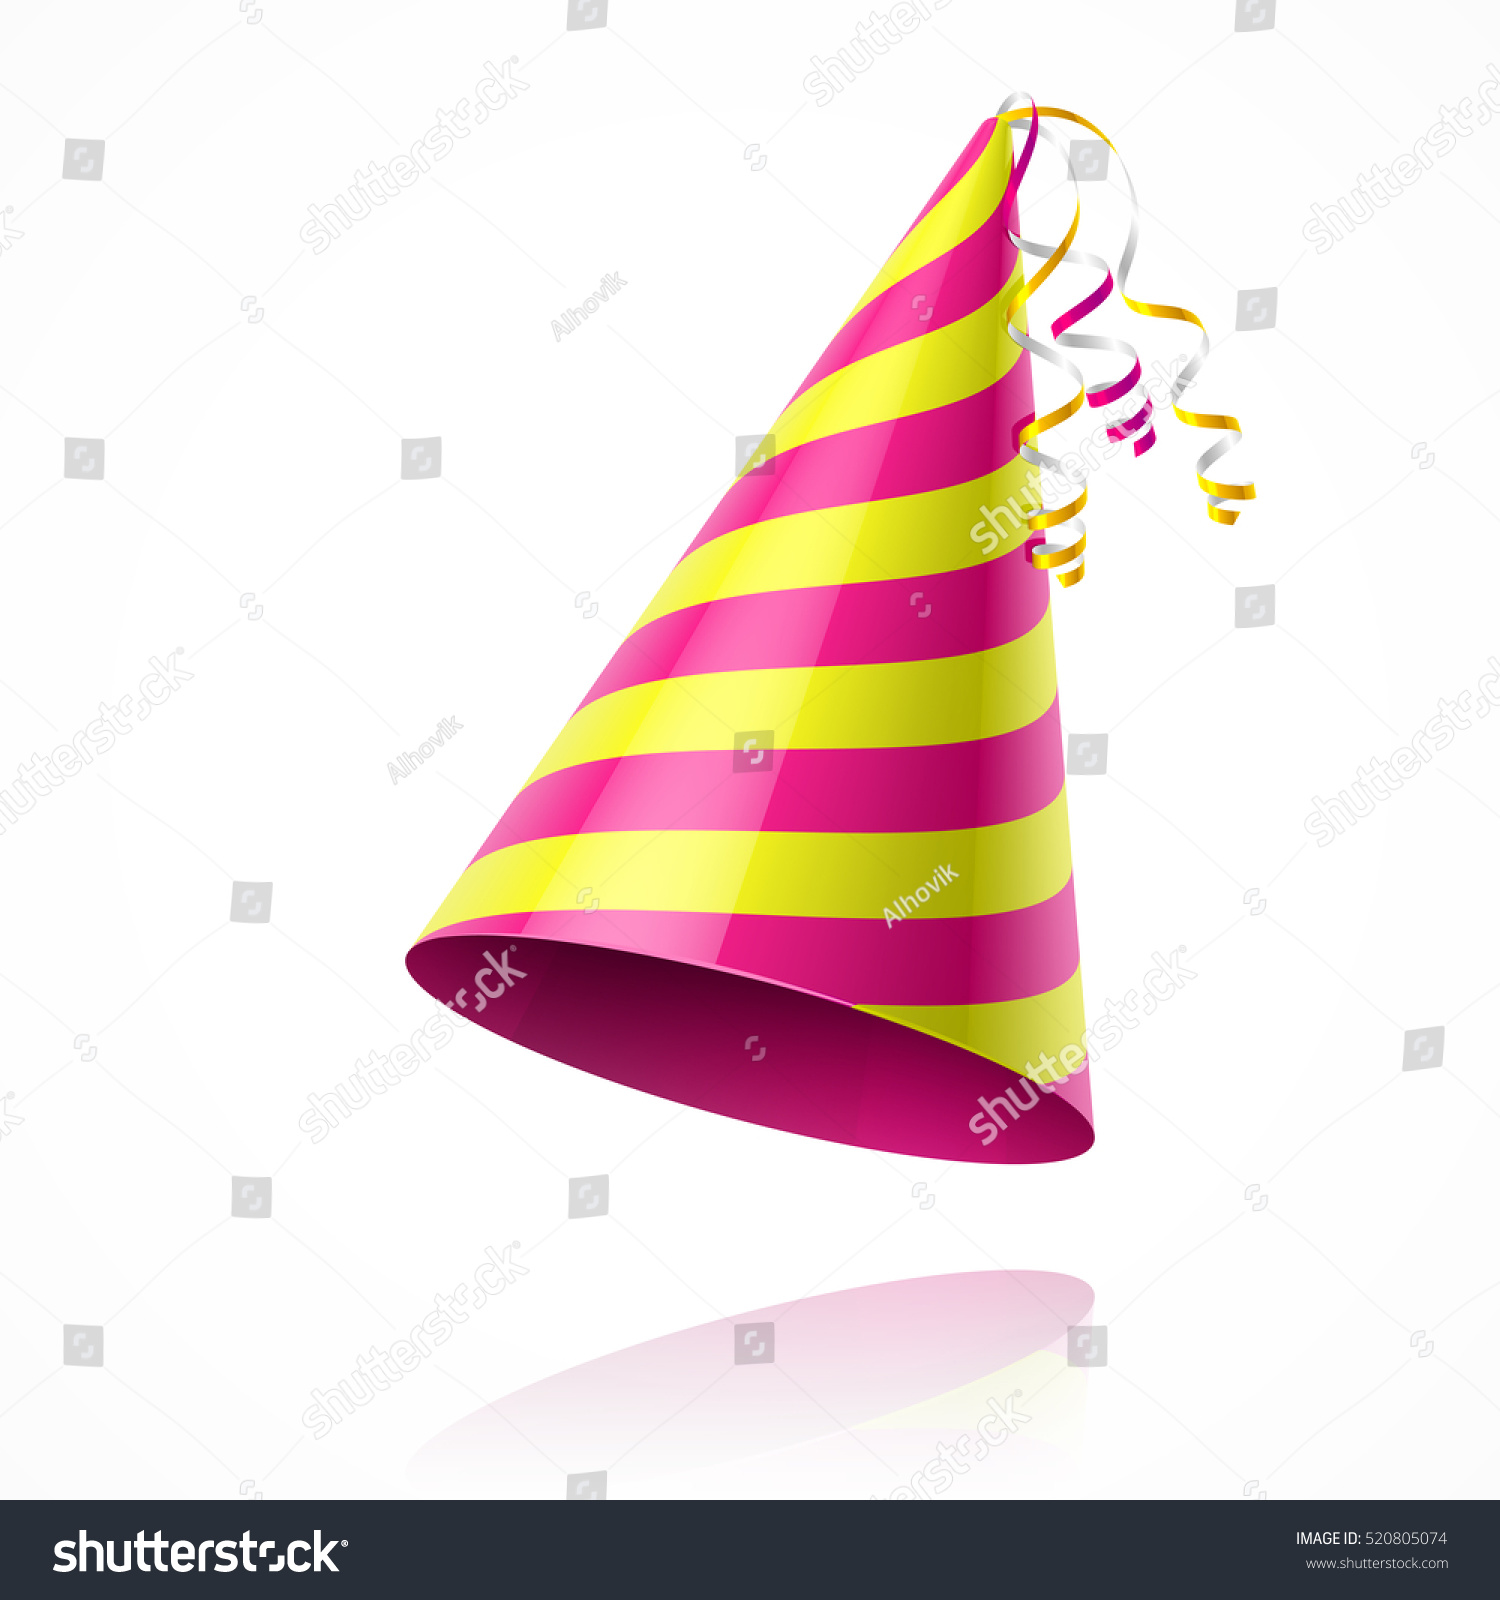 Party Hat. Vector. - 520805074 : Shutterstock